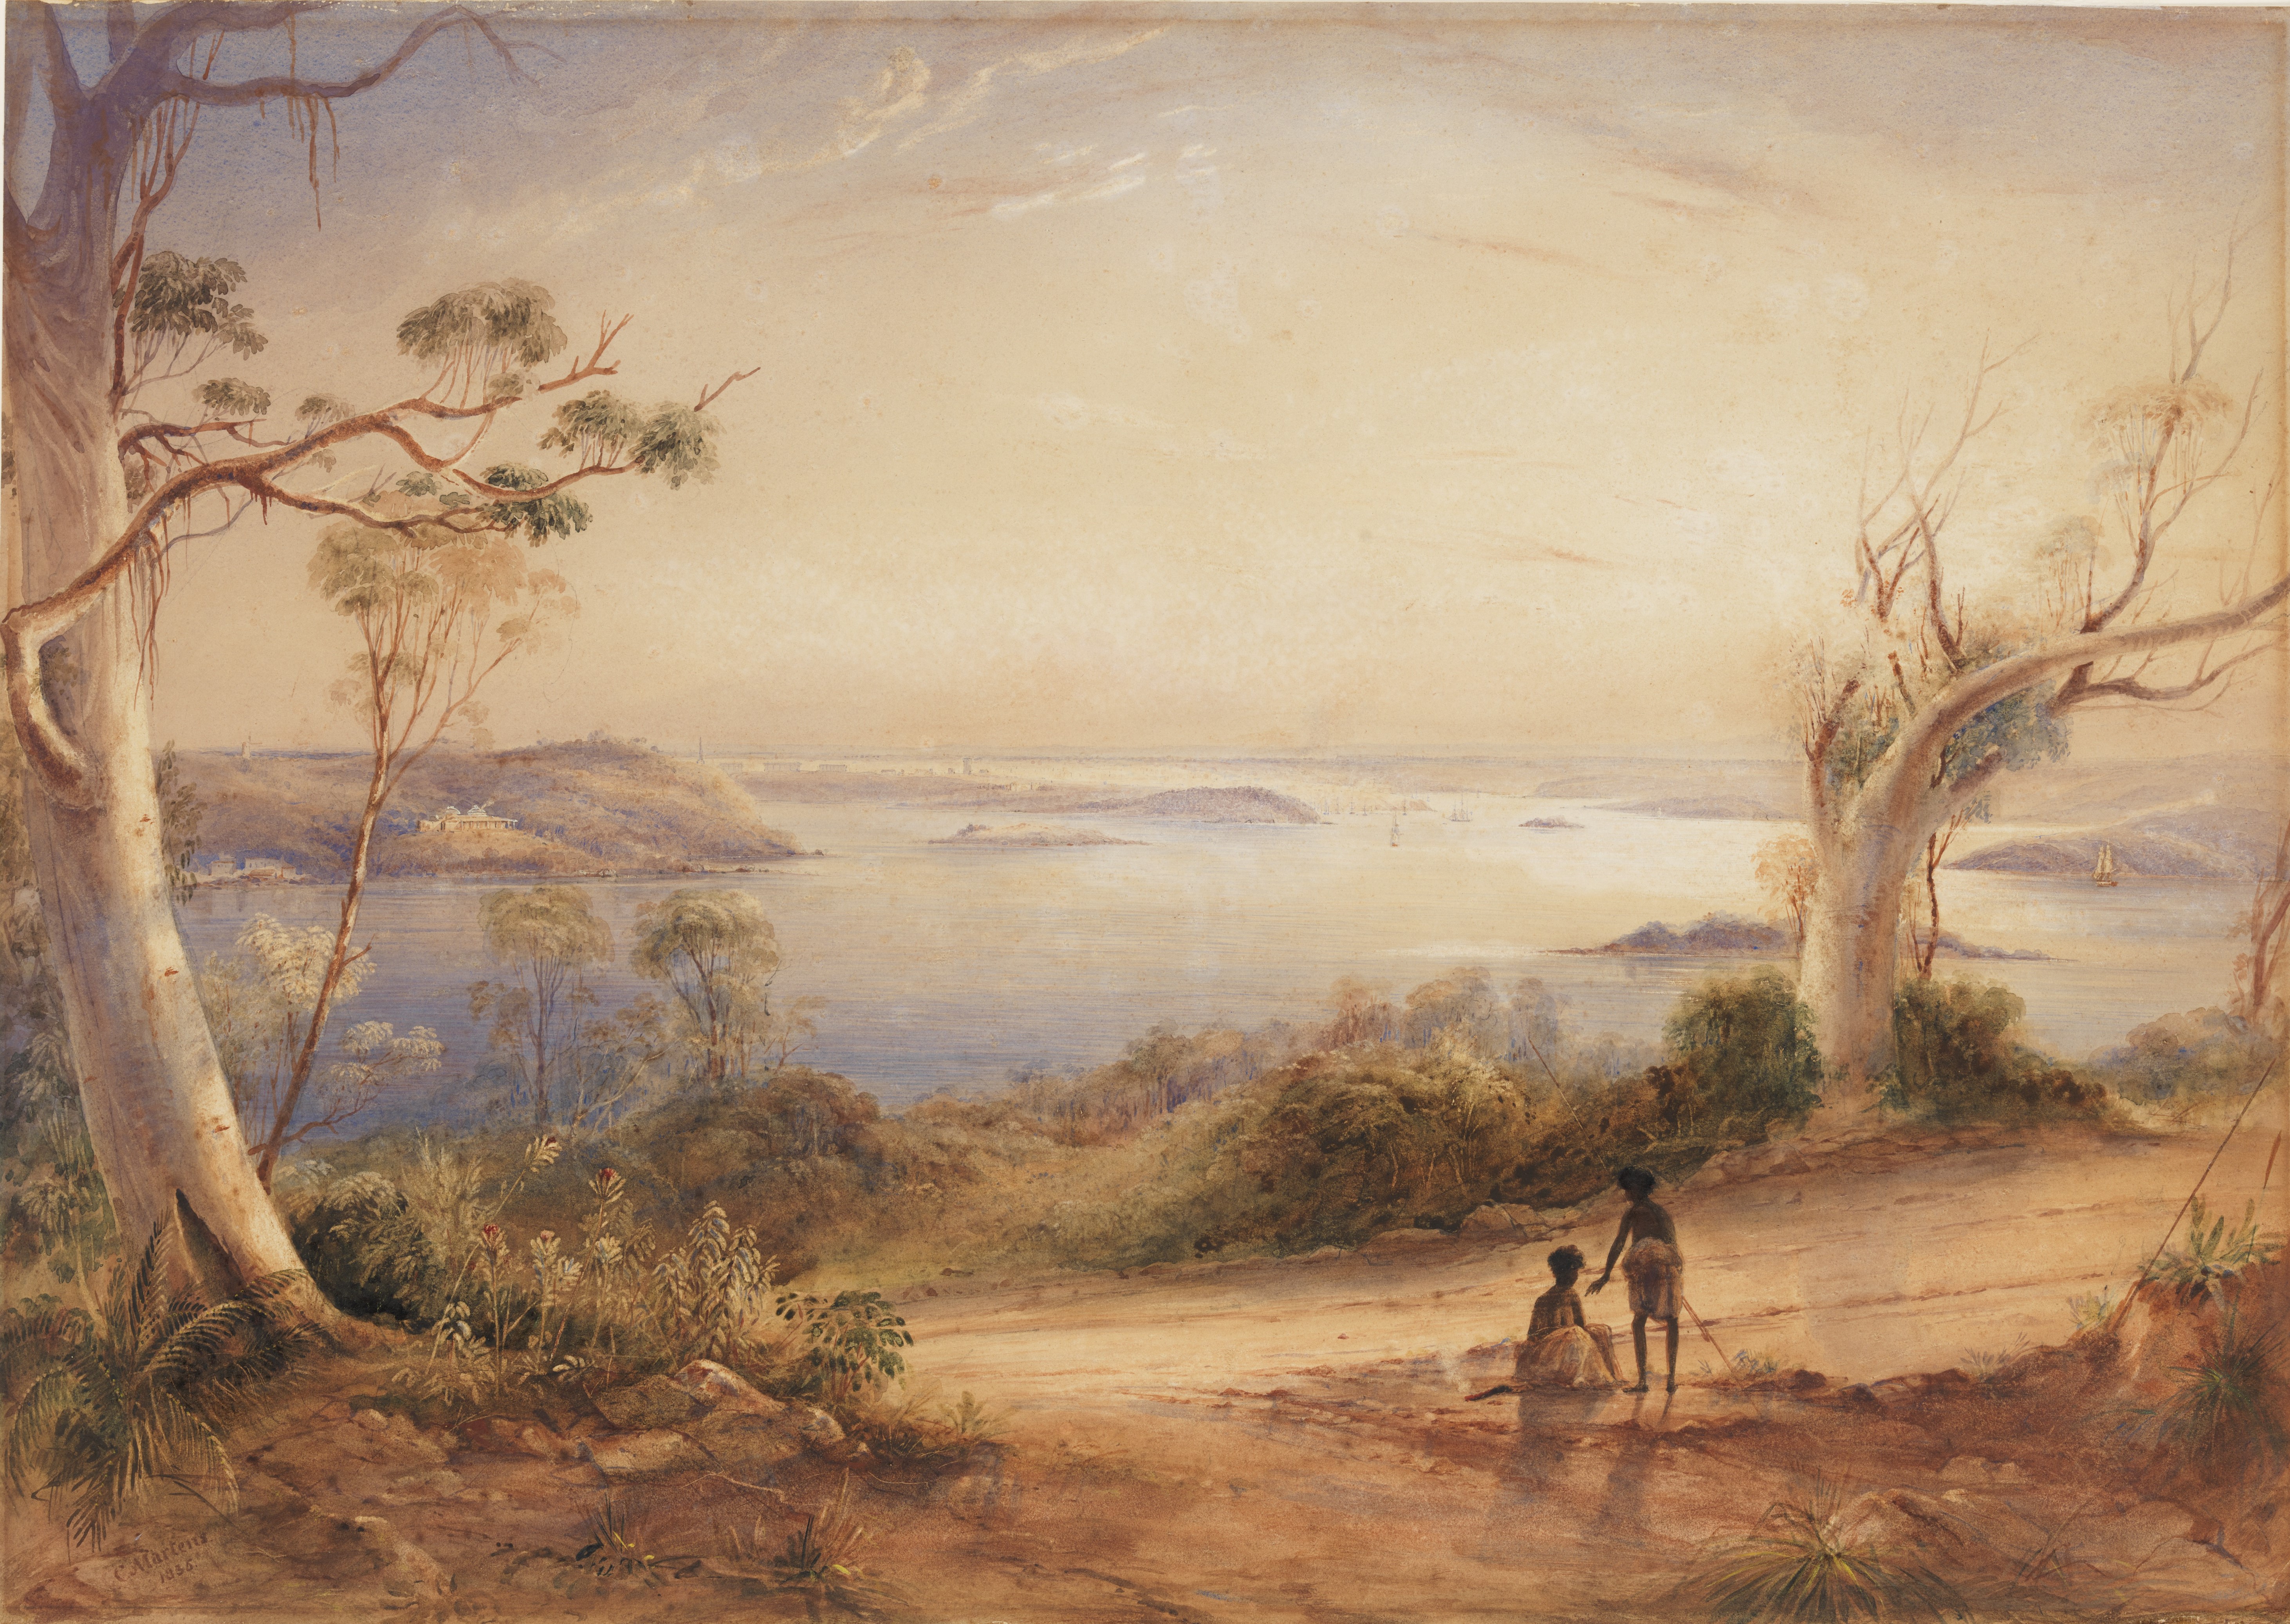 Illustration of Sydney Harbour